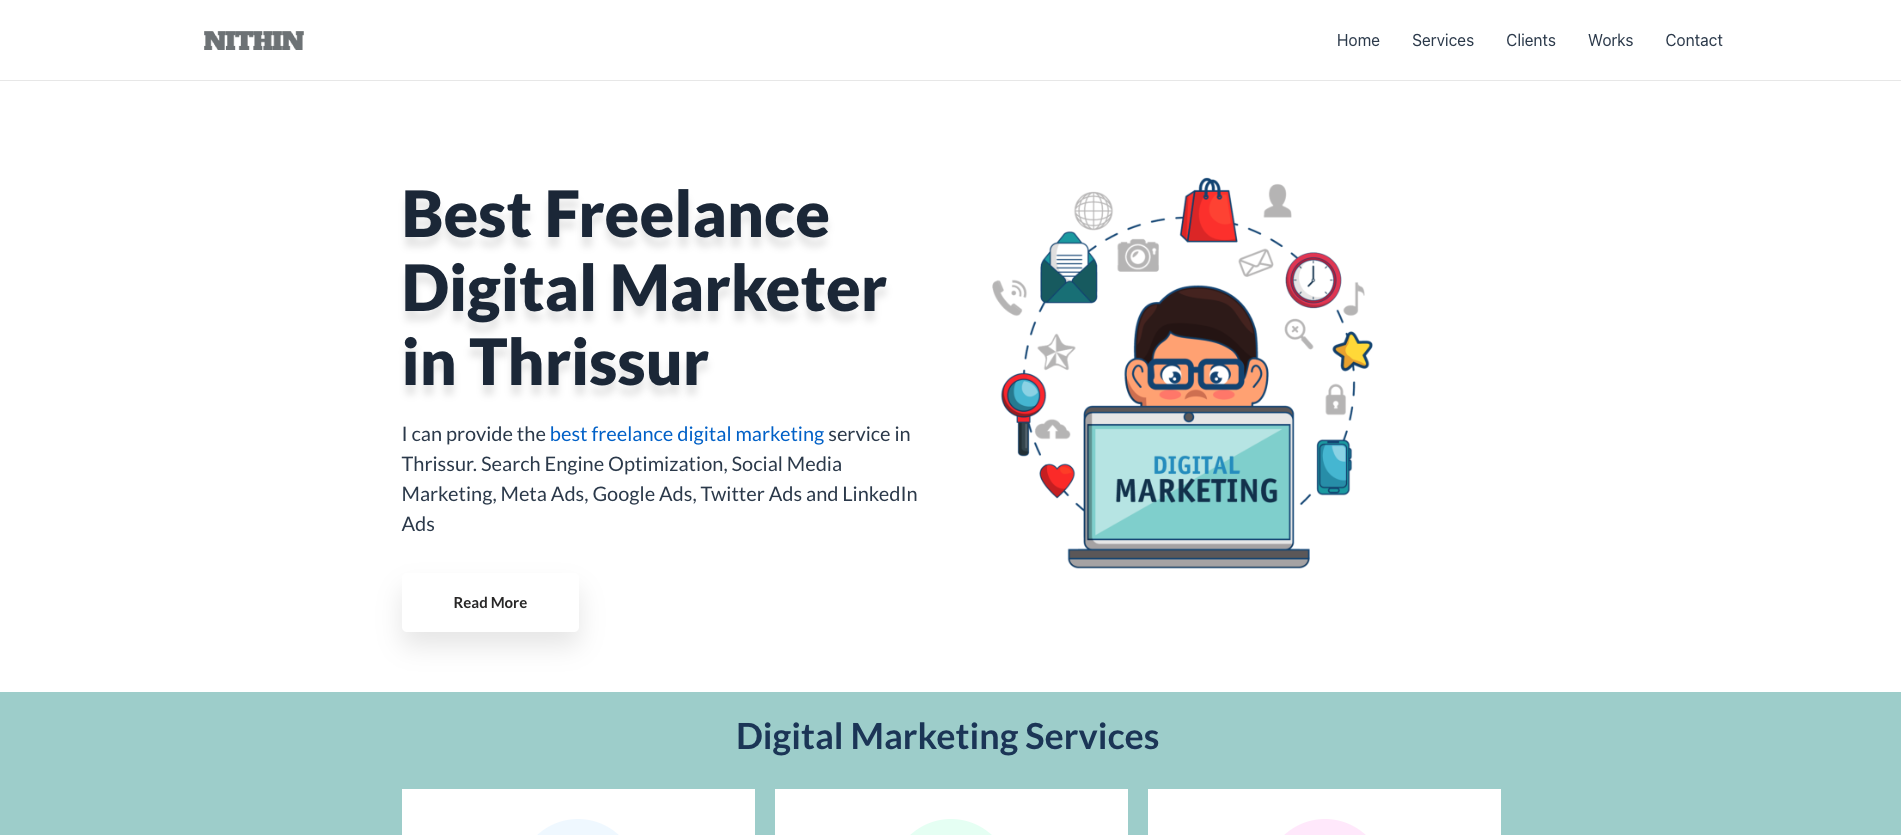 Best Freelance Digital Marketer in Thrissur